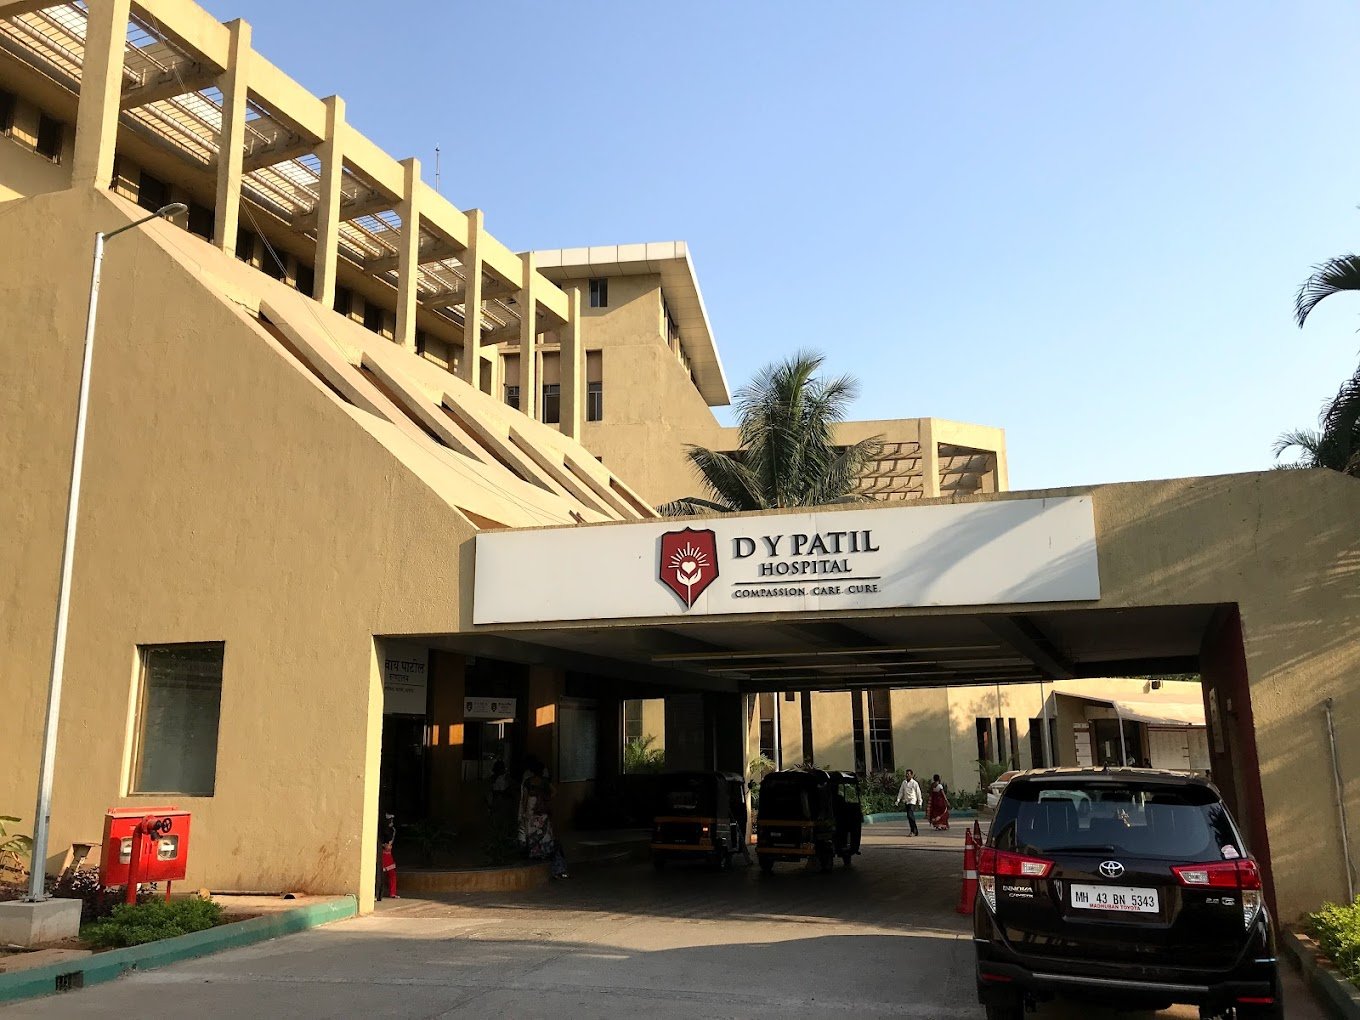 DY Patil Hospital